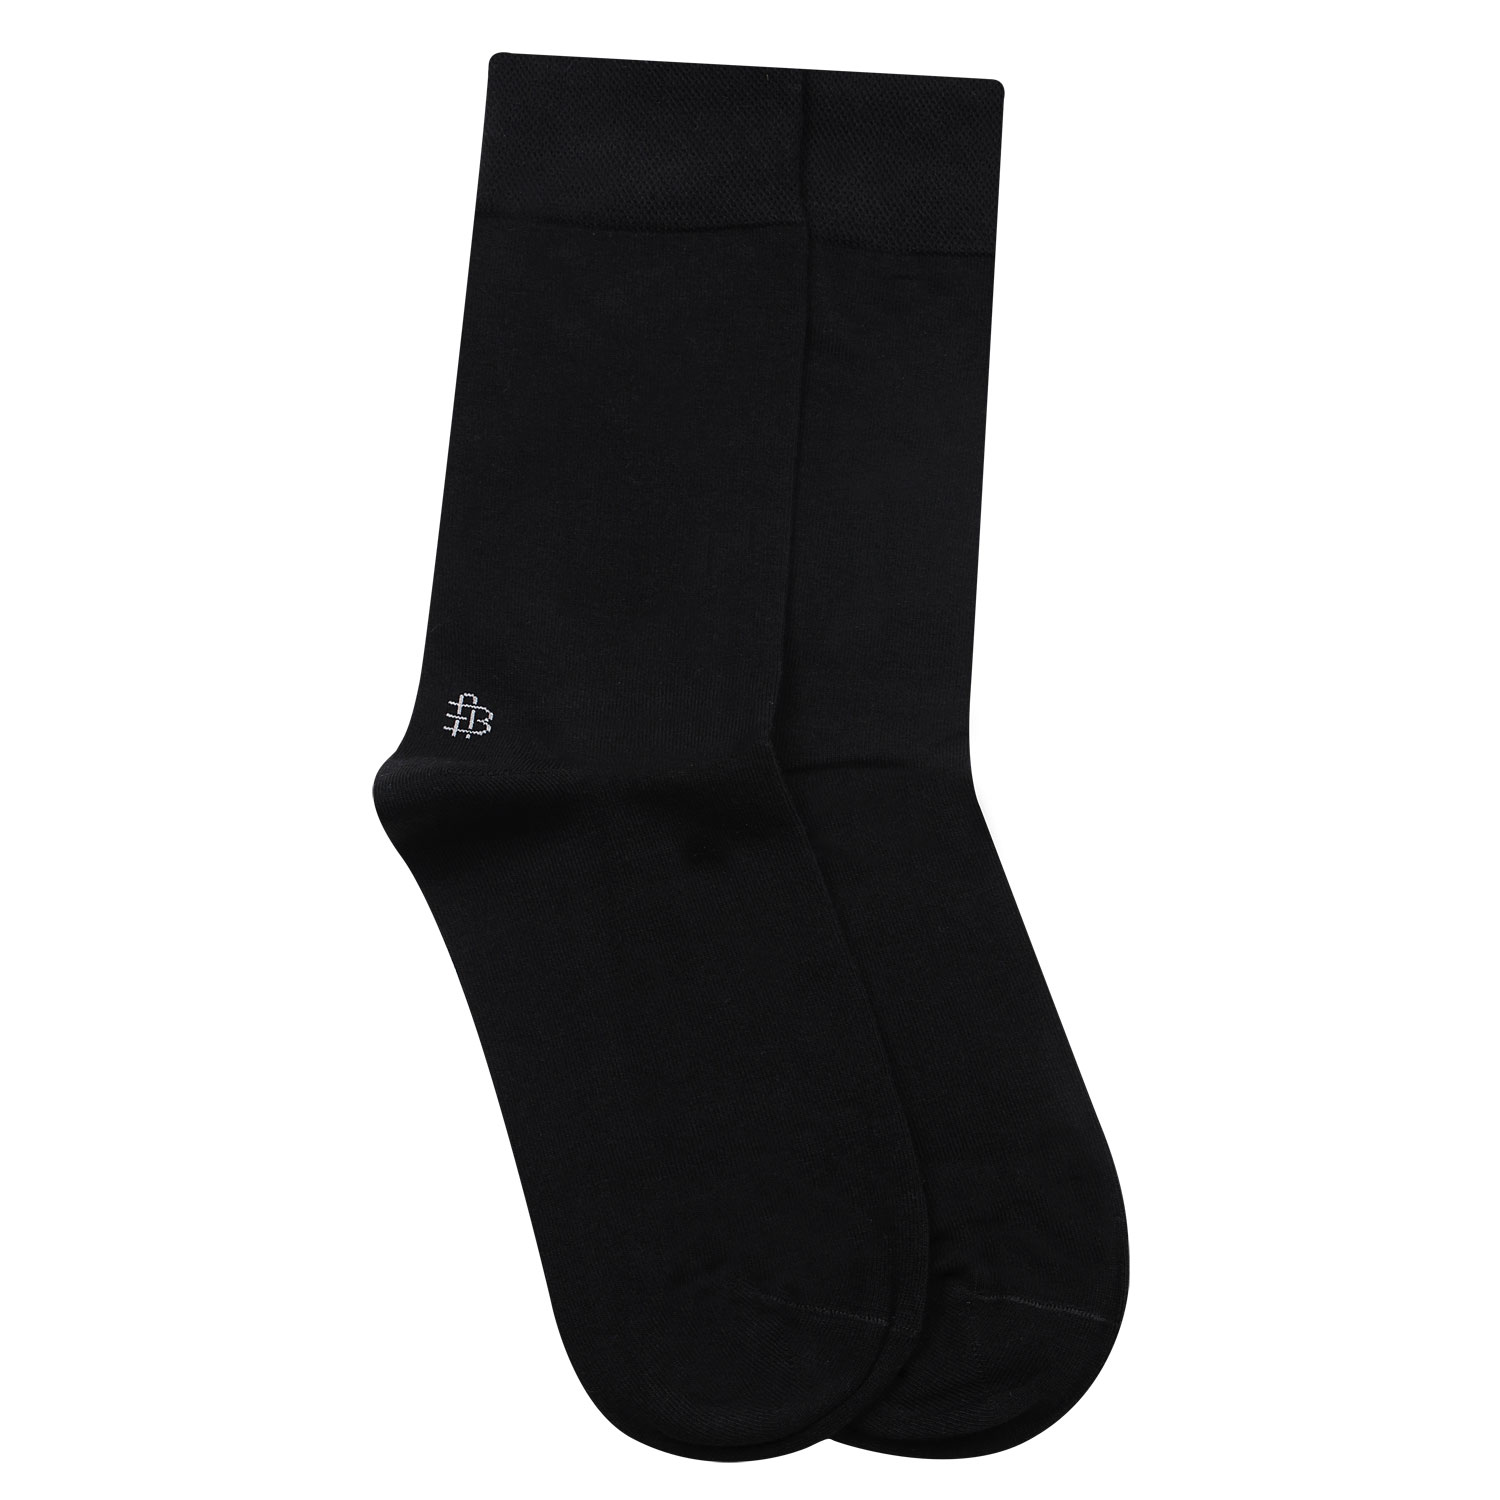 Buy Bonjour Odour free plain Socks in 10 colors for Men with Bonjour ...